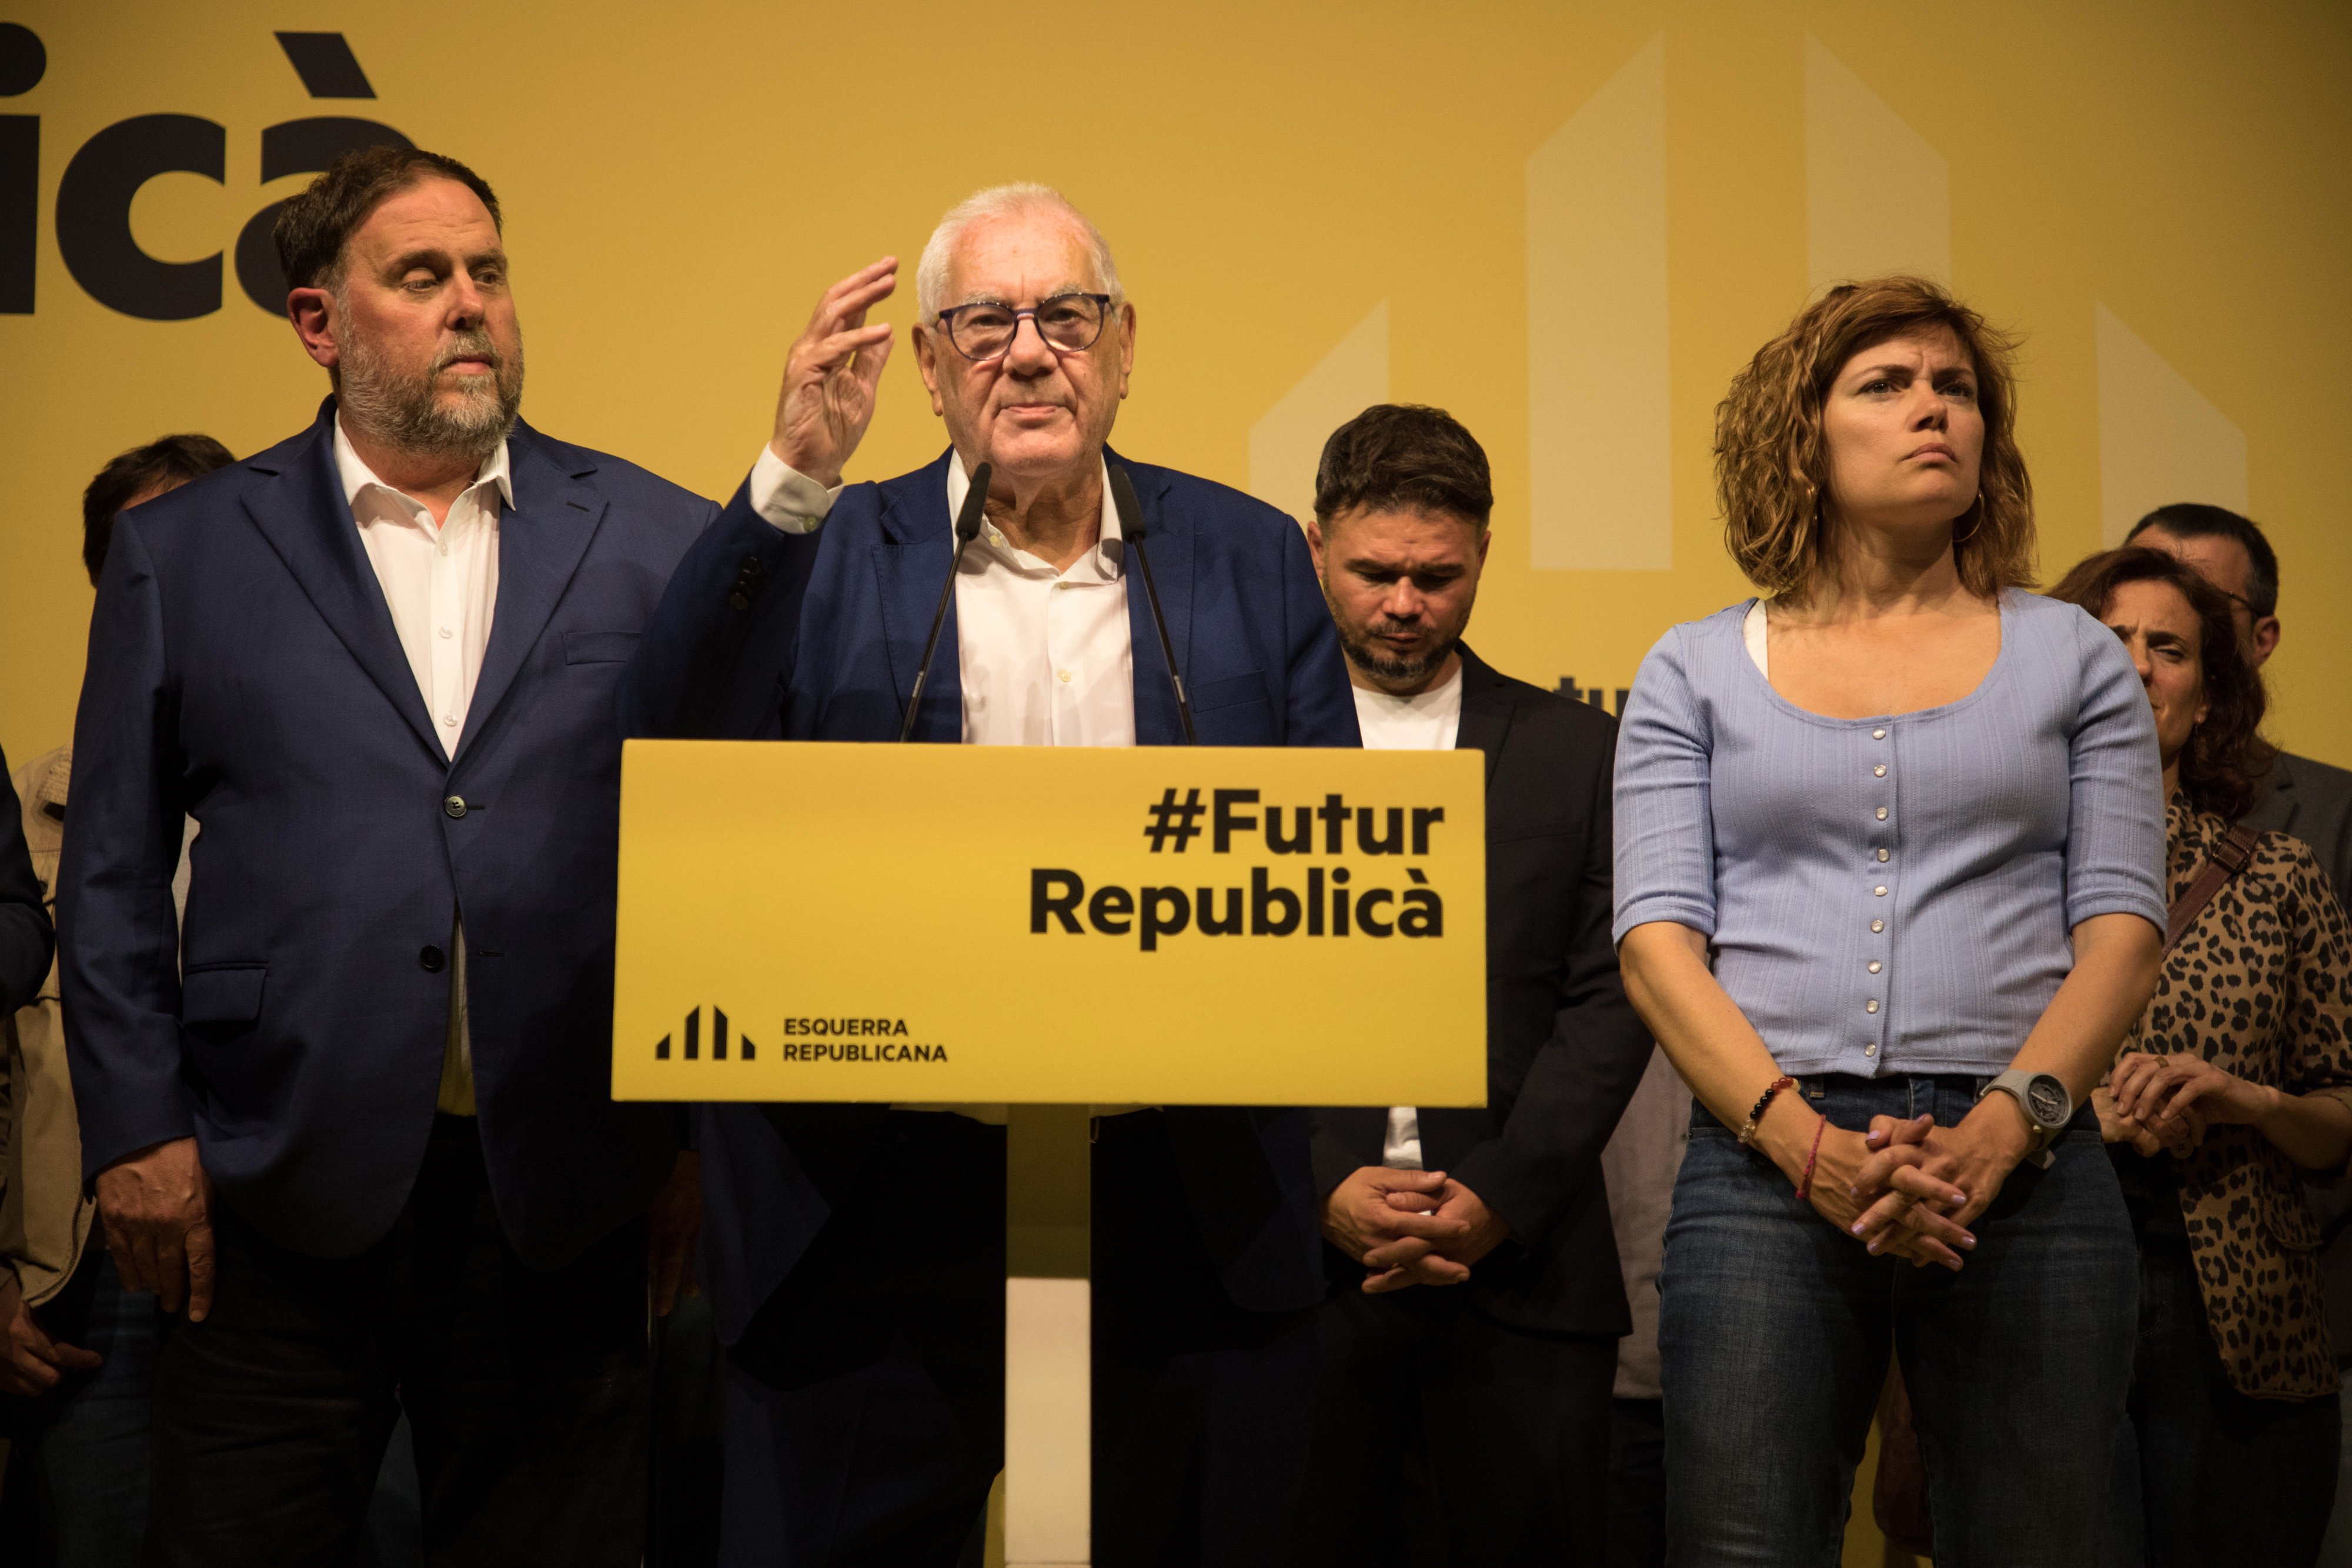 Batacazo de Ernest Maragall en Barcelona, que llama a "recomponer el soberanismo catalán"